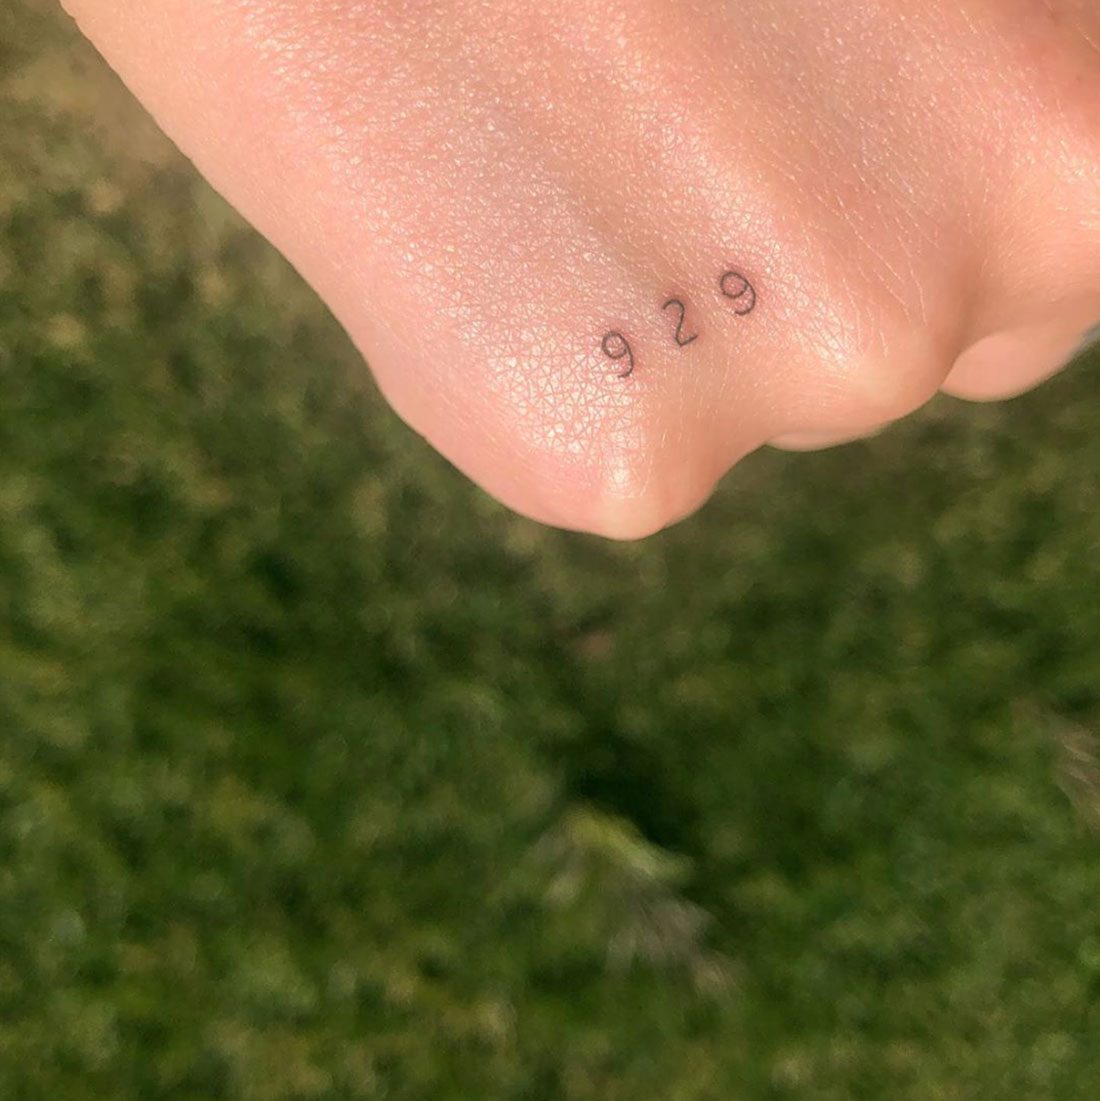 Halsey Tattoo Instagram August 11, 2019